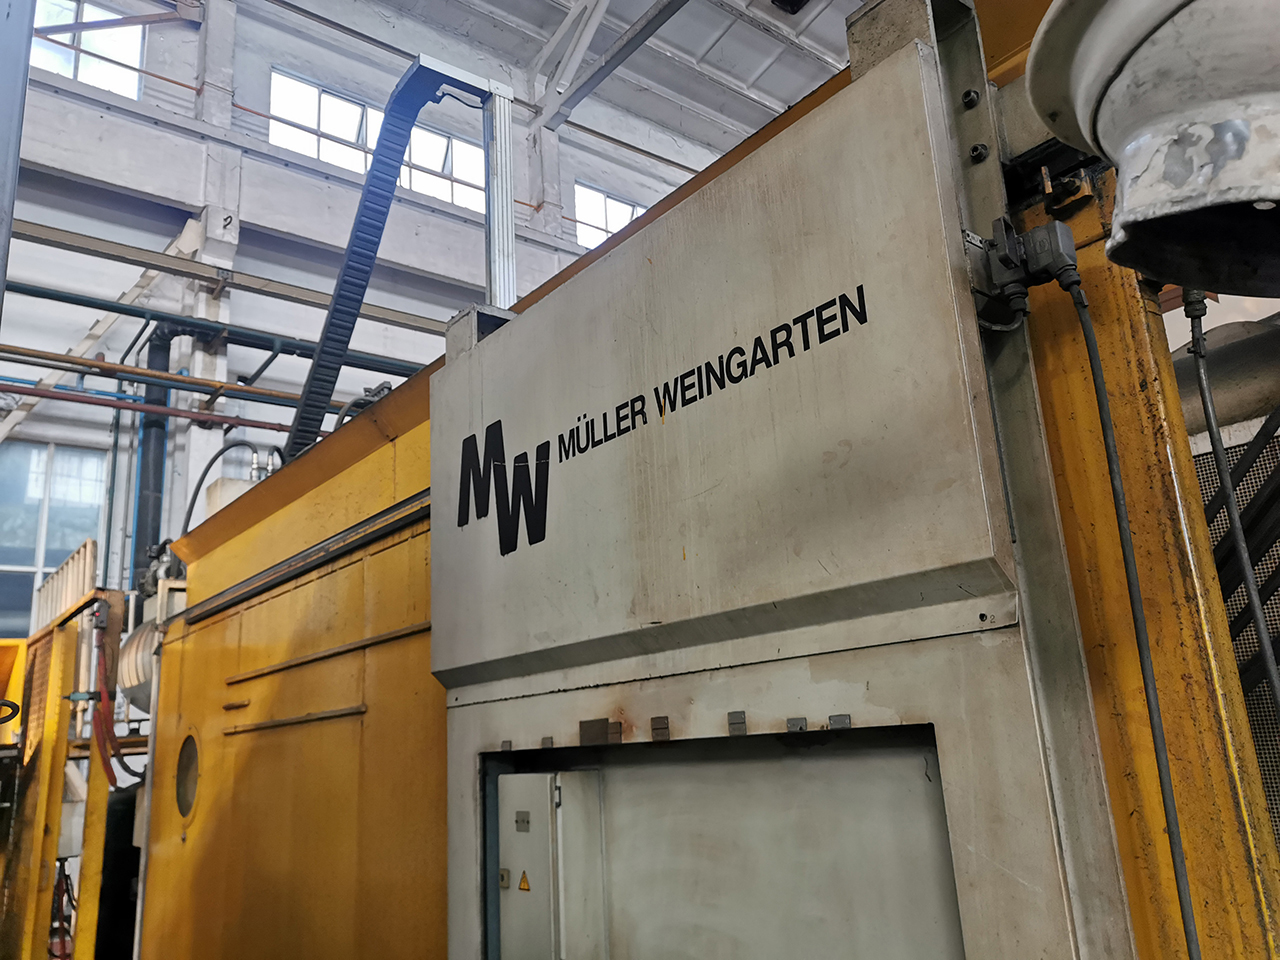 Müller Weingarten GDK 2500 maszyna odlewnicza z zimną komorą KK1576, używana